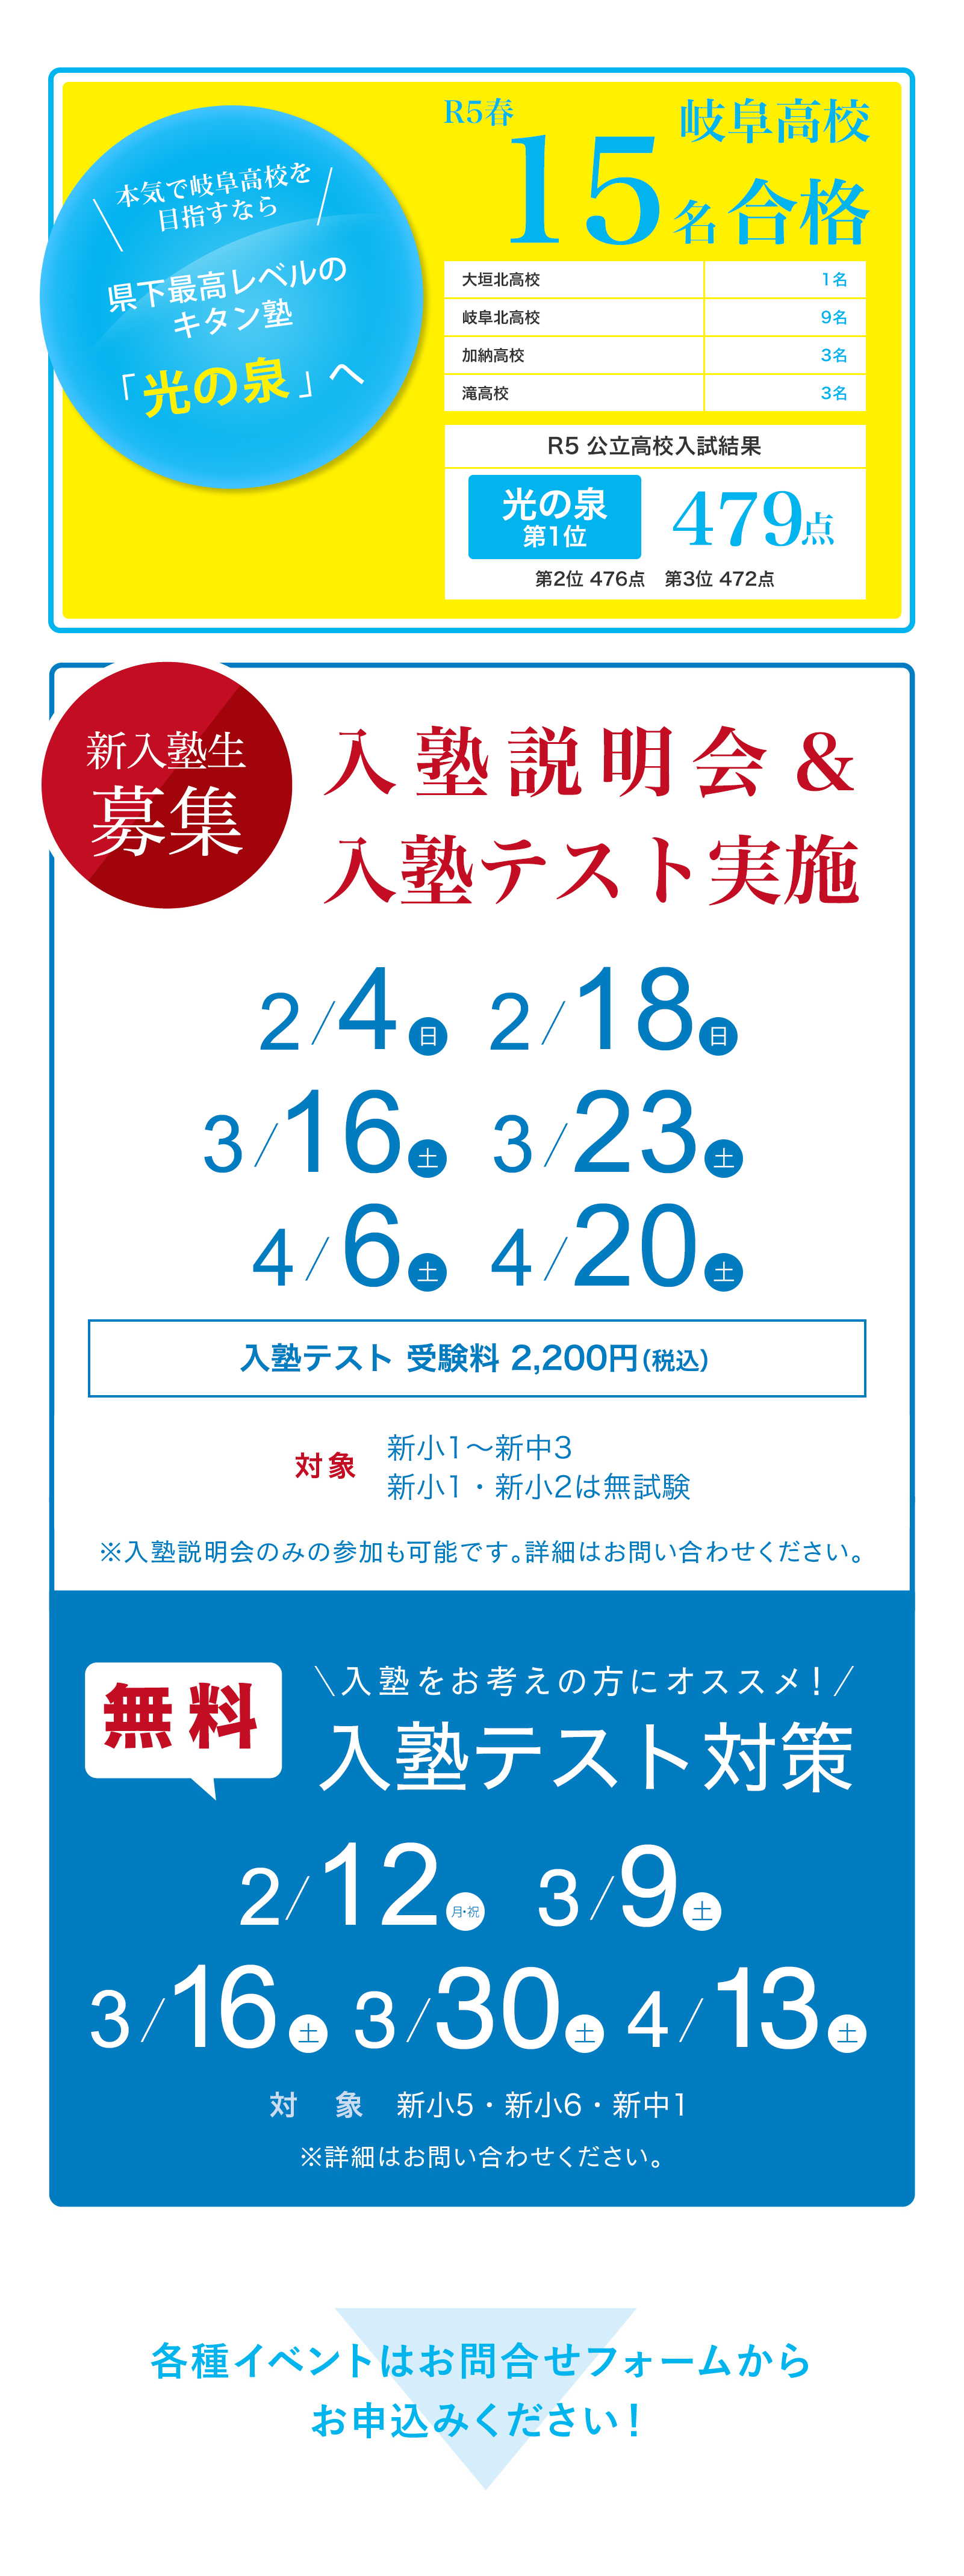 岐阜高校入学者のおよそ14人に1人がキタングループ生。高校受験その他高校合格実績も豊富